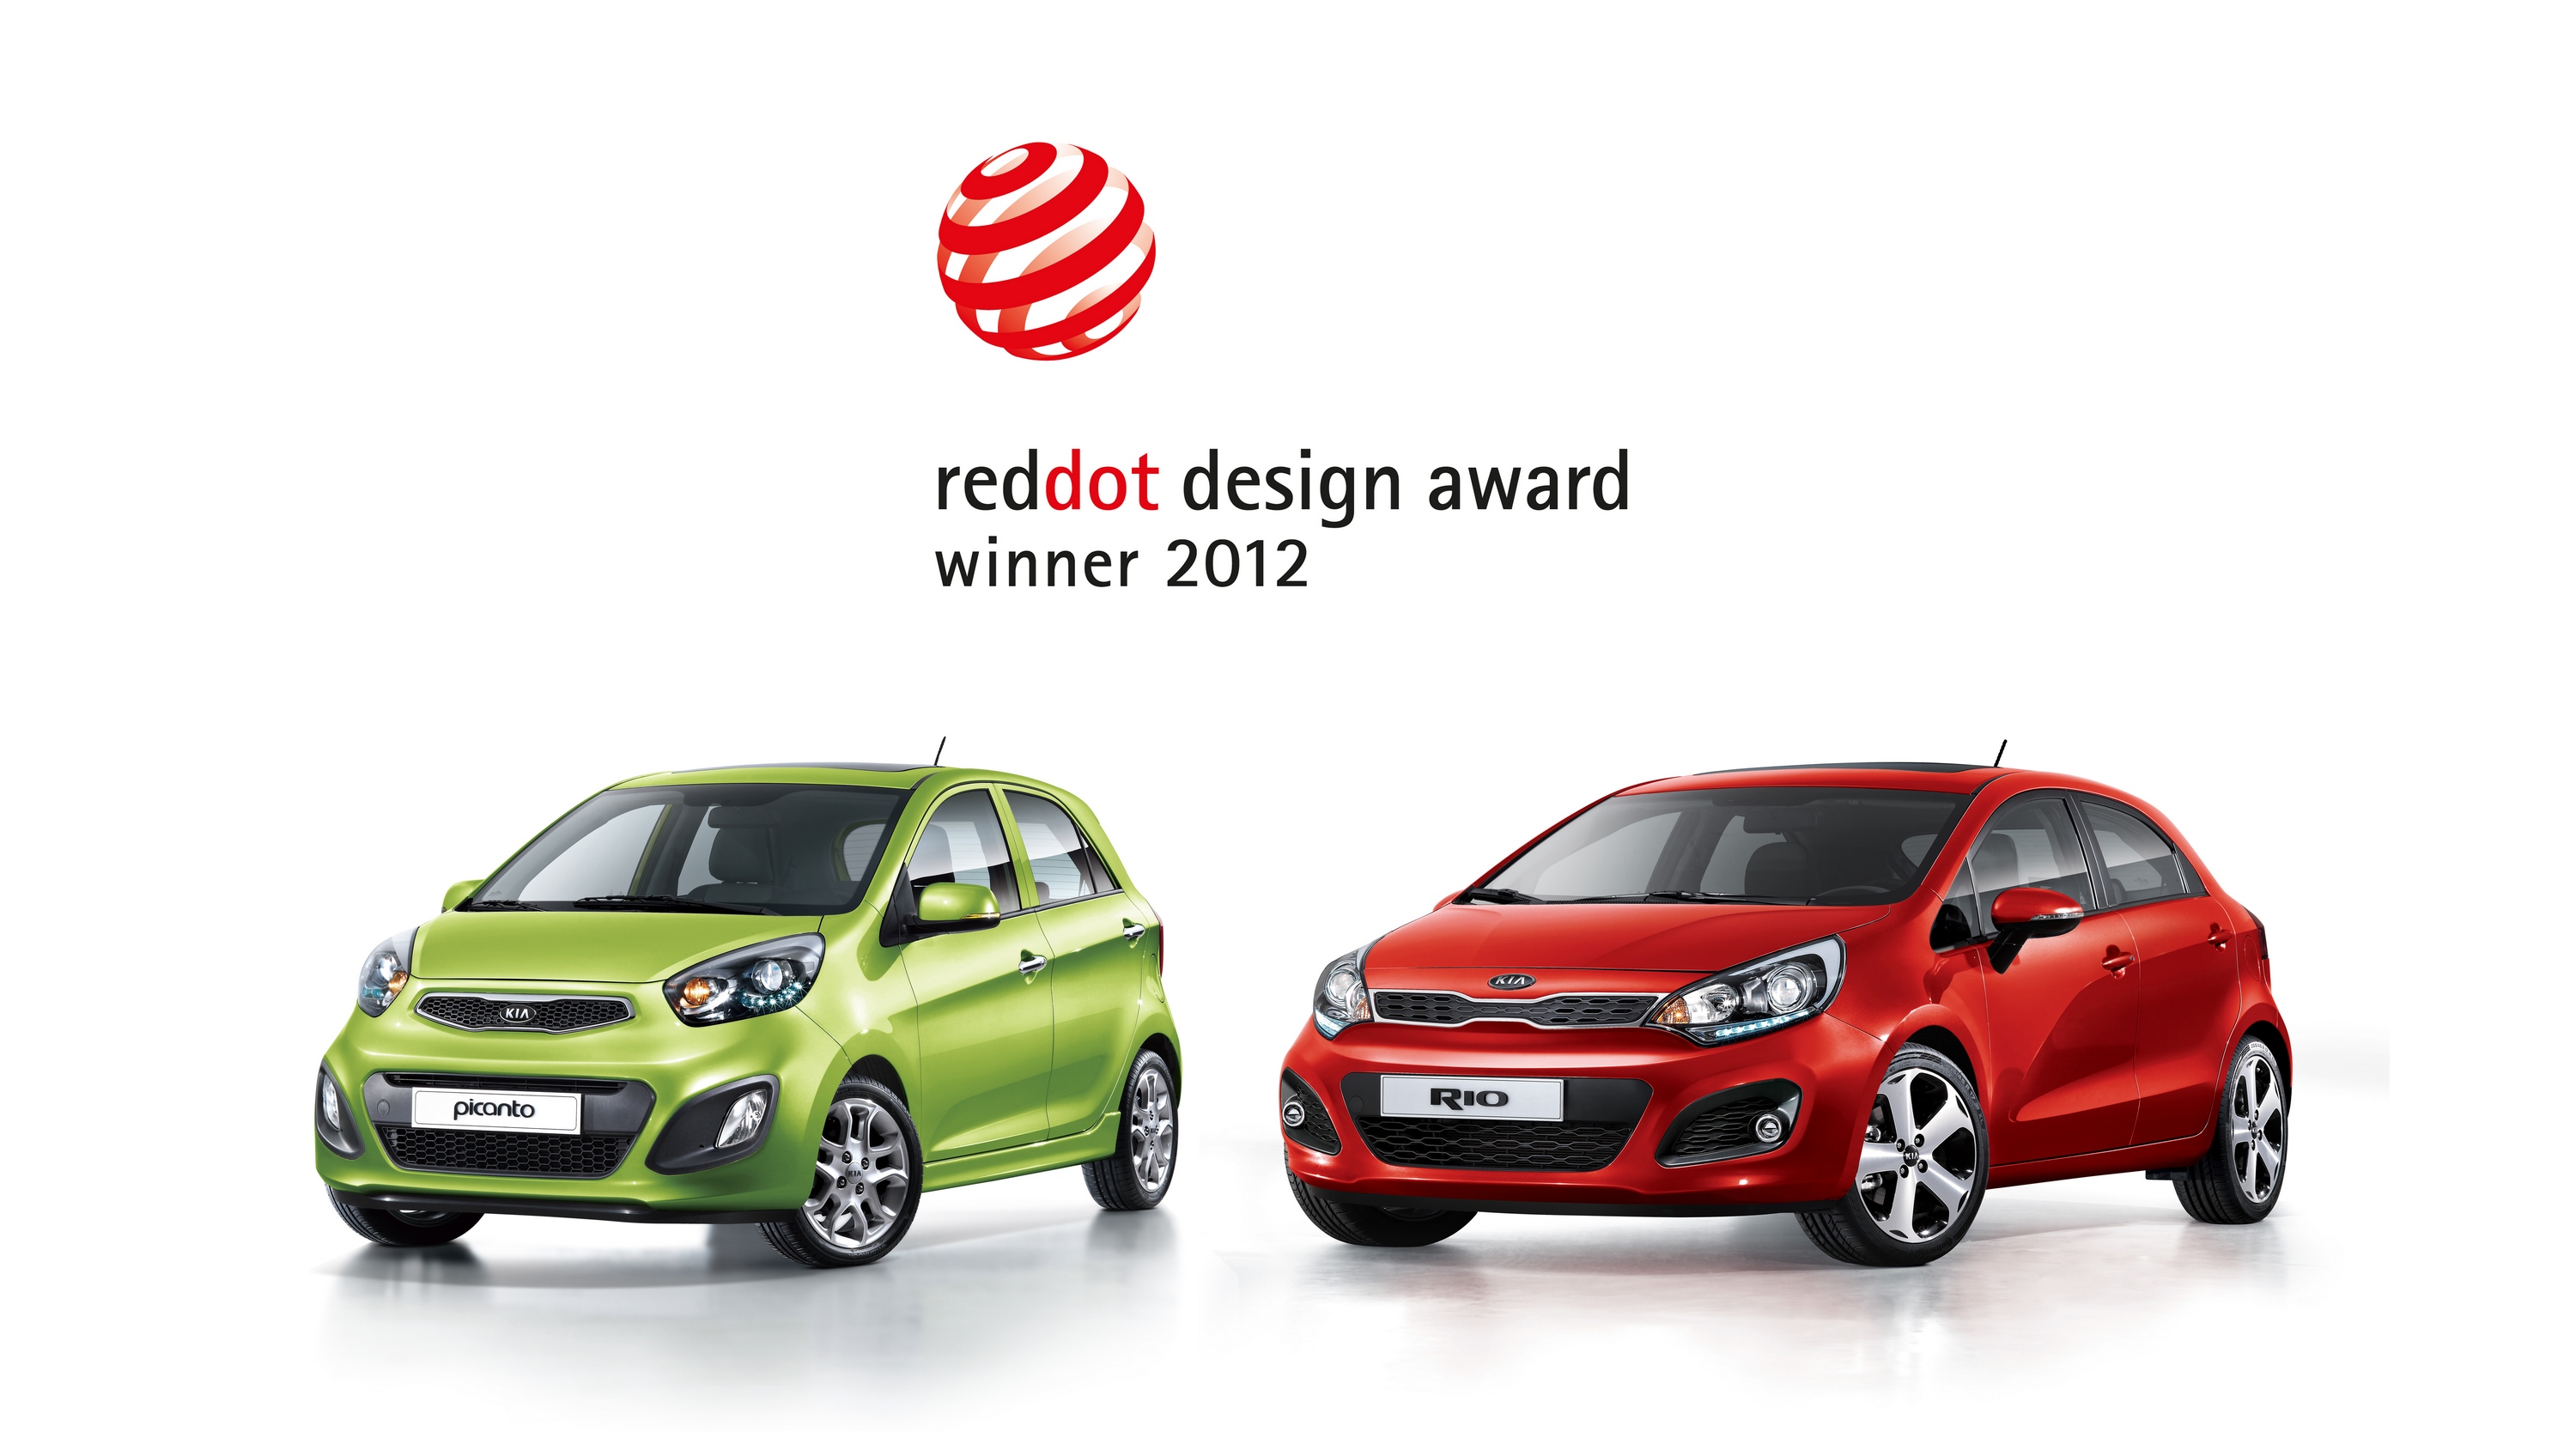 Kia_red_dot_design_award_winners_2012